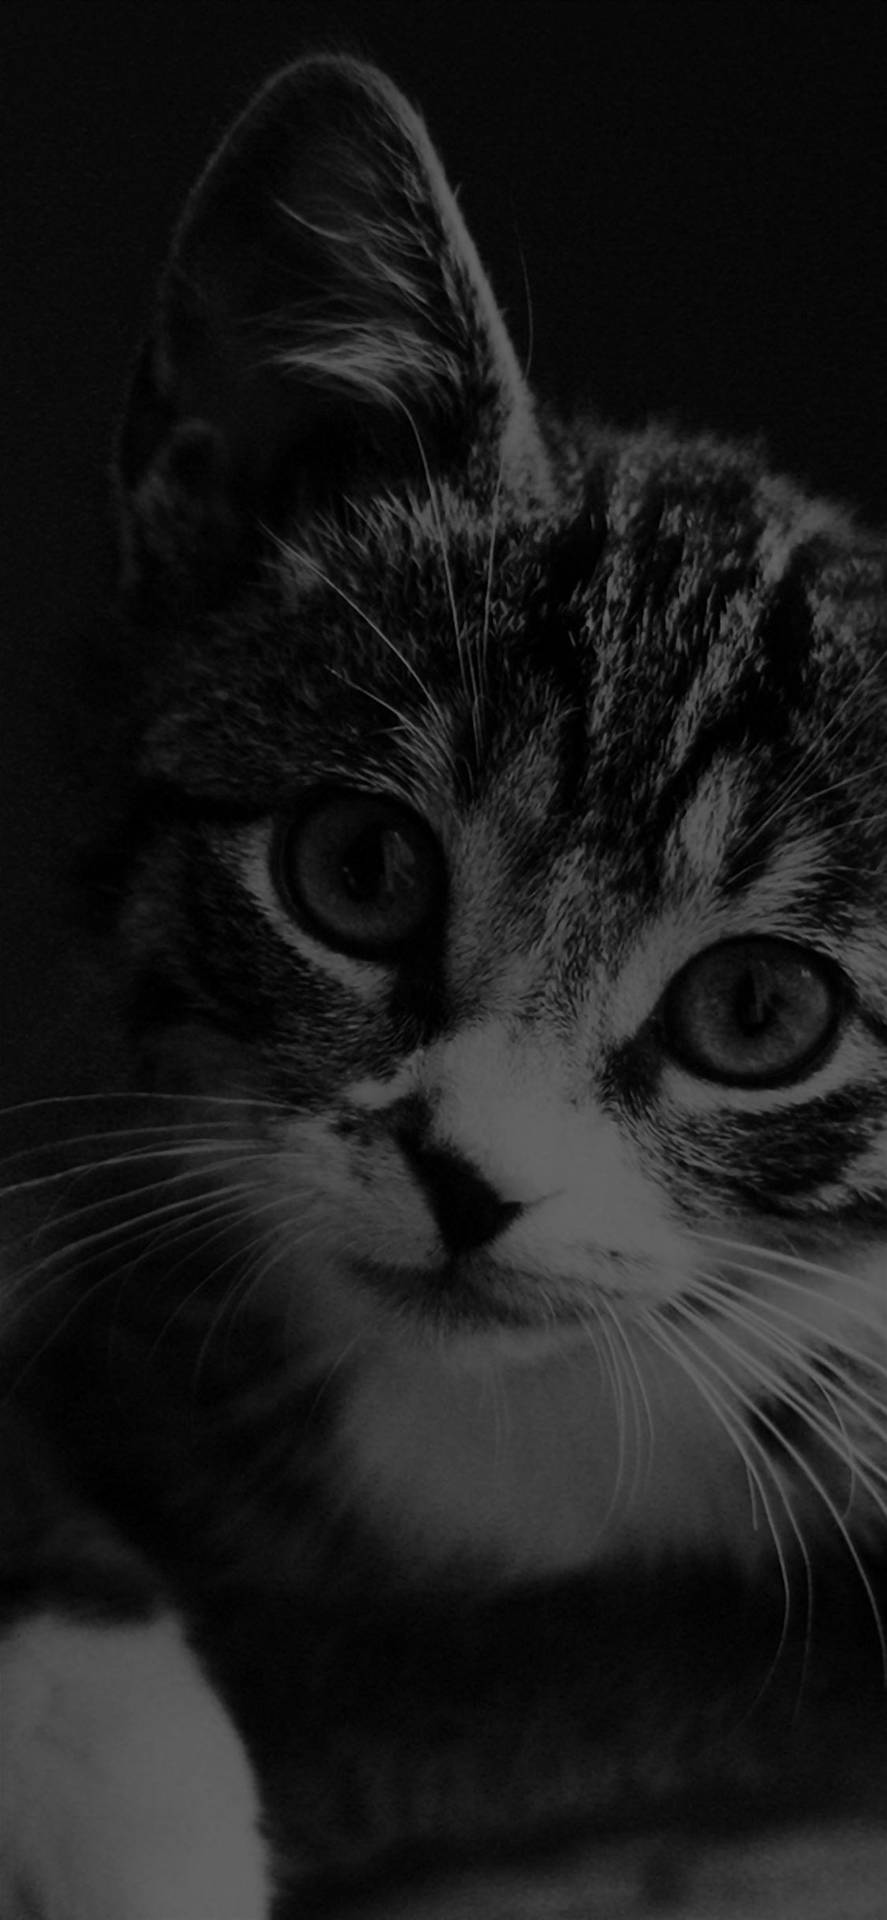 Cute Cat iPhone Dark Wallpaper